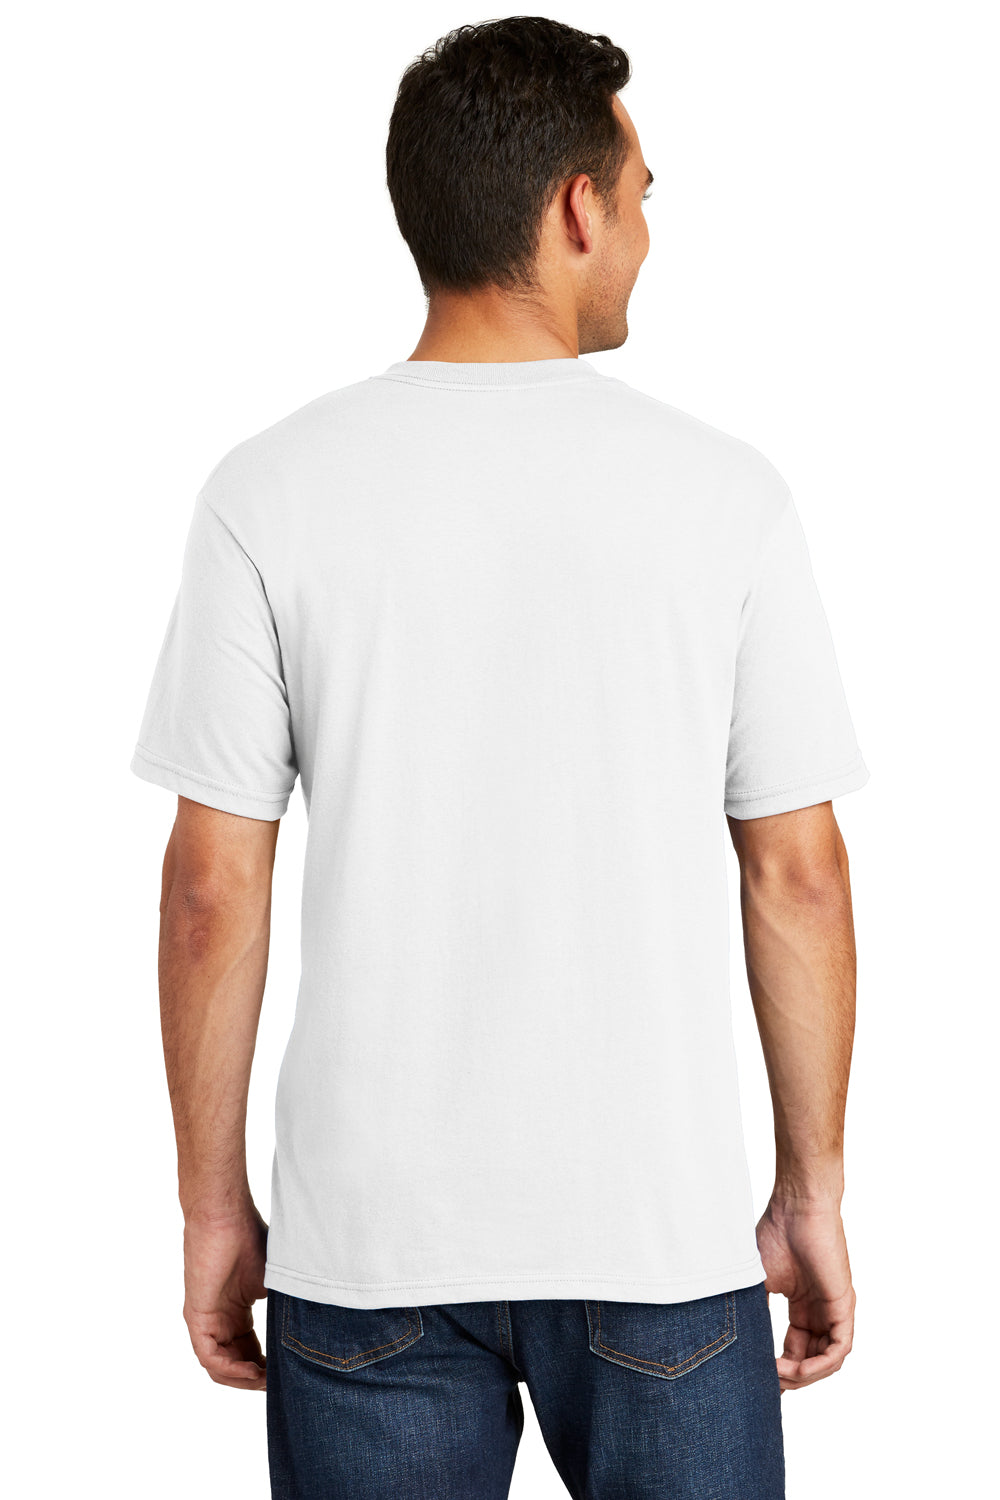 Port & Company USA100 Mens USA Made Short Sleeve Crewneck T-Shirt White Back